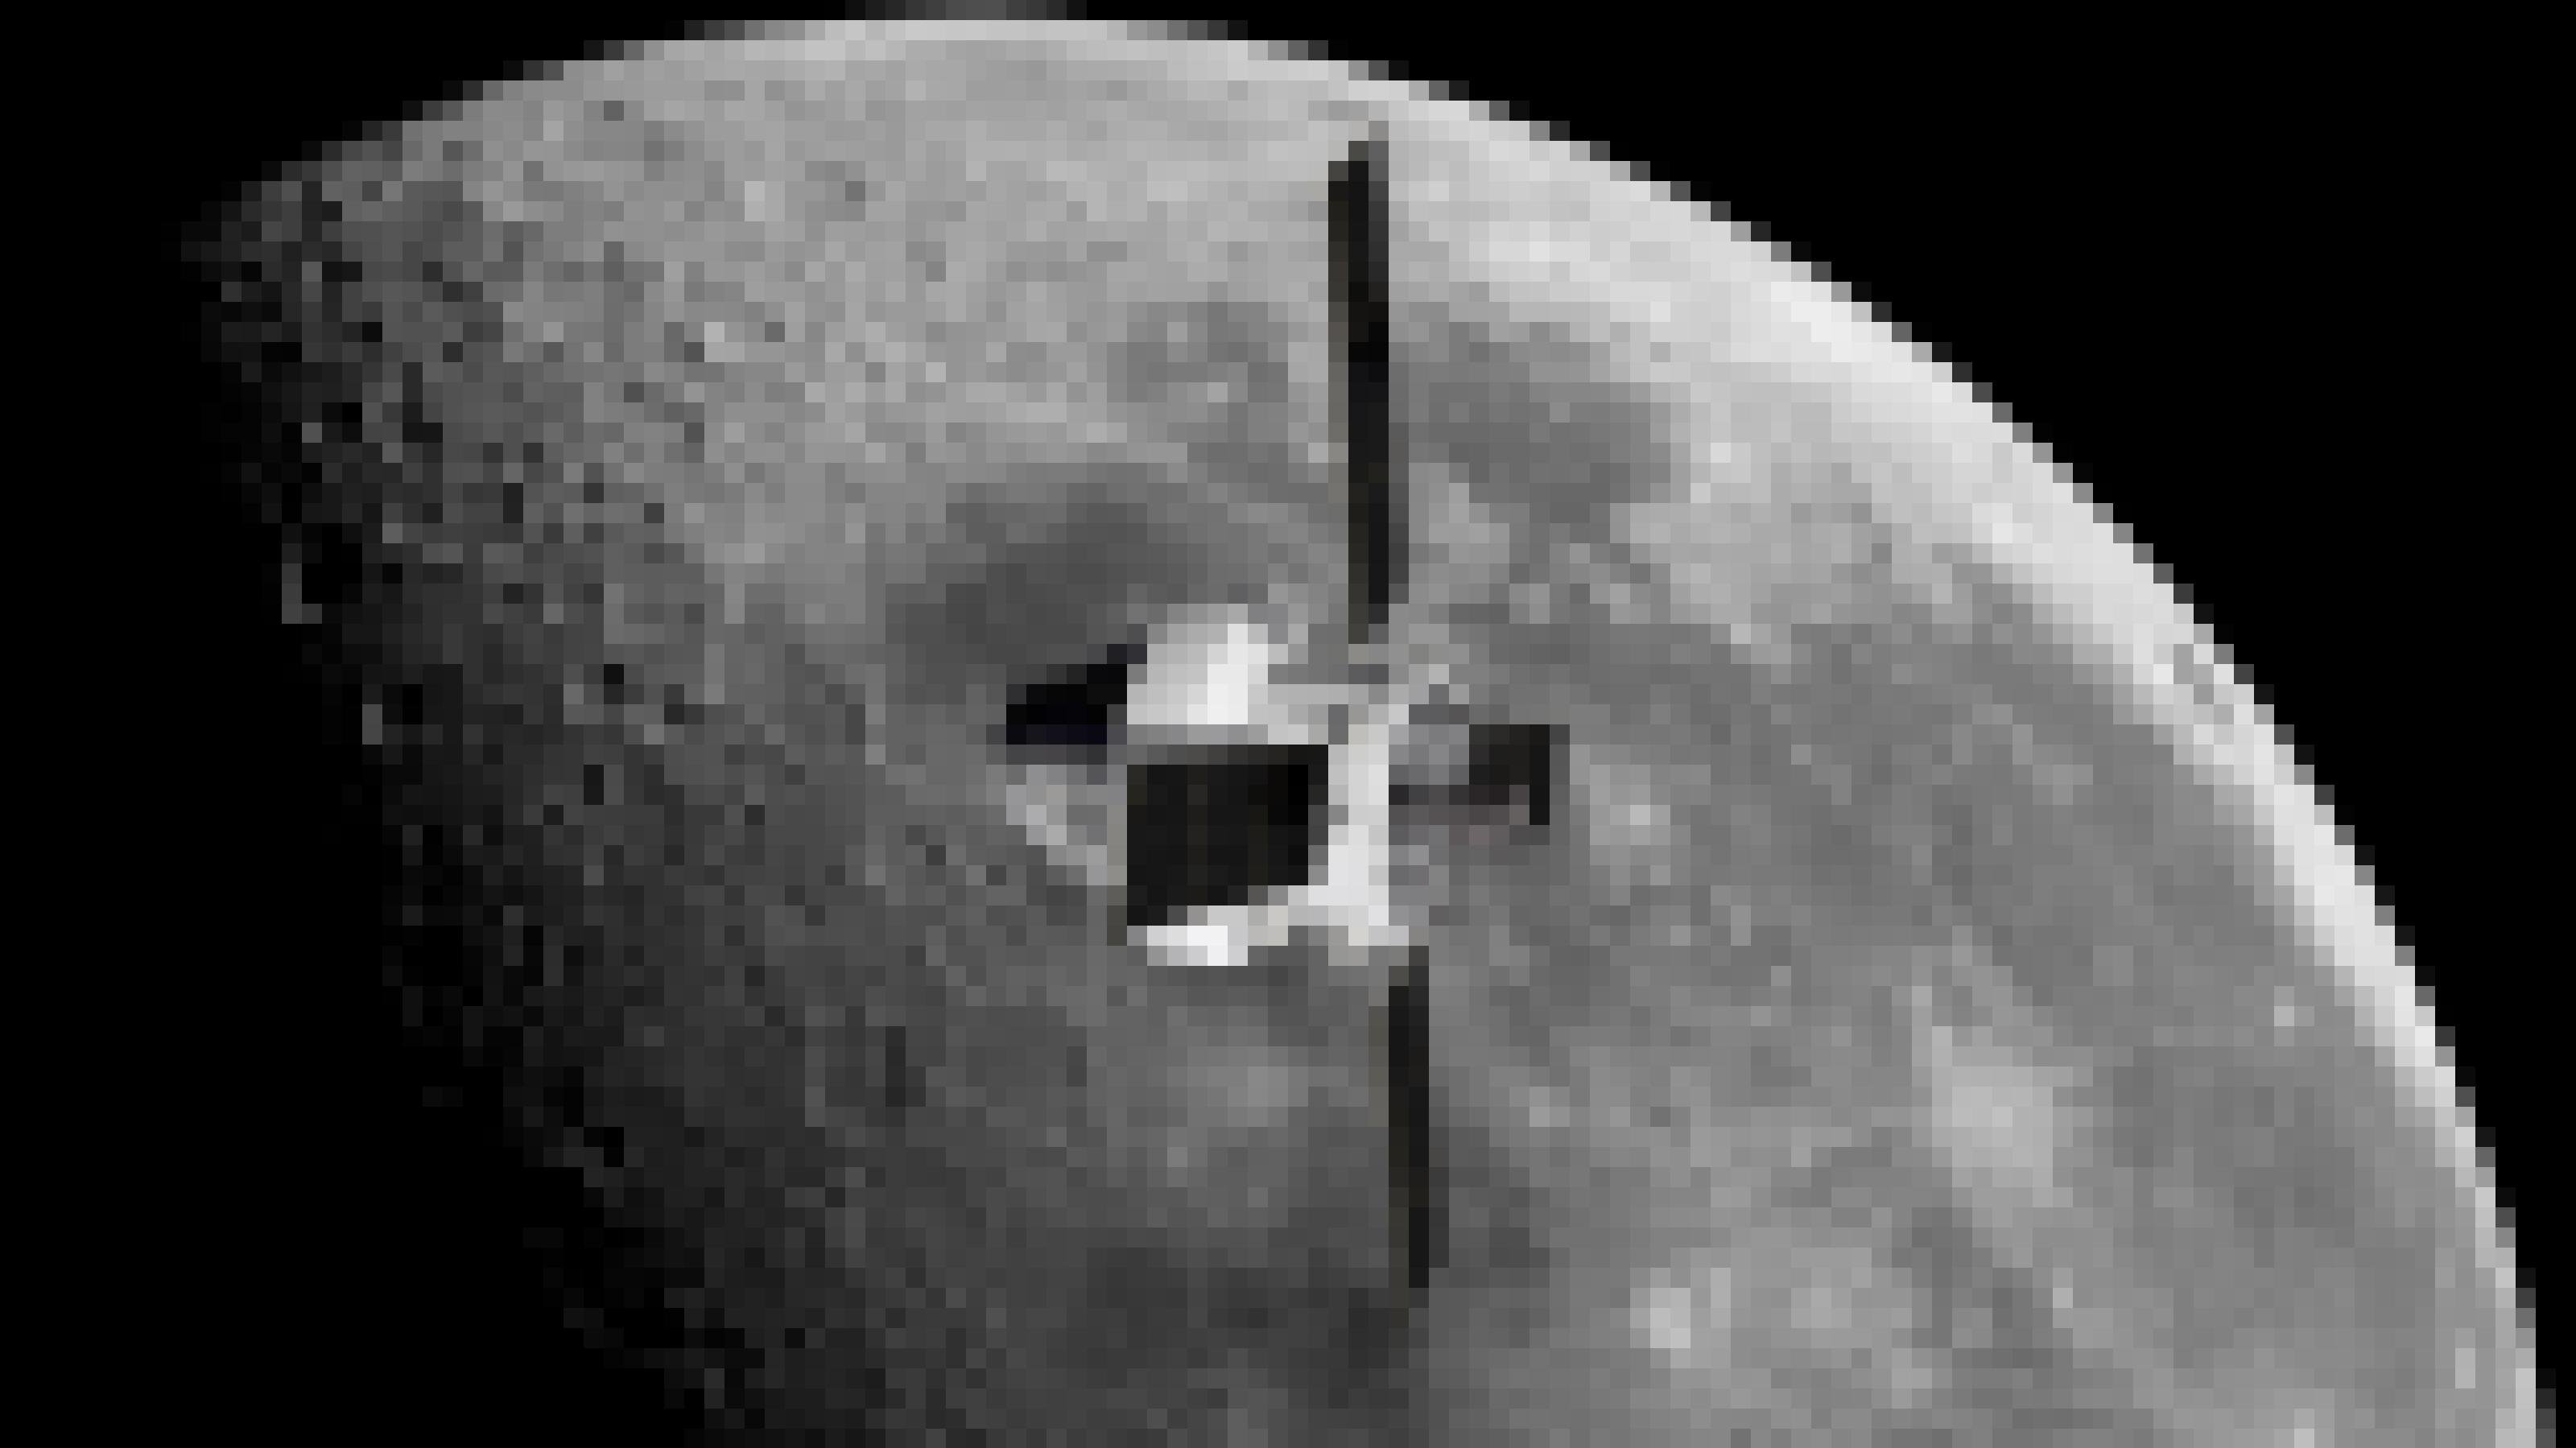 Eine künstlerische Darstellung des Orion-Raumschiff (Vordergrund) am Mond (Hintergrund).